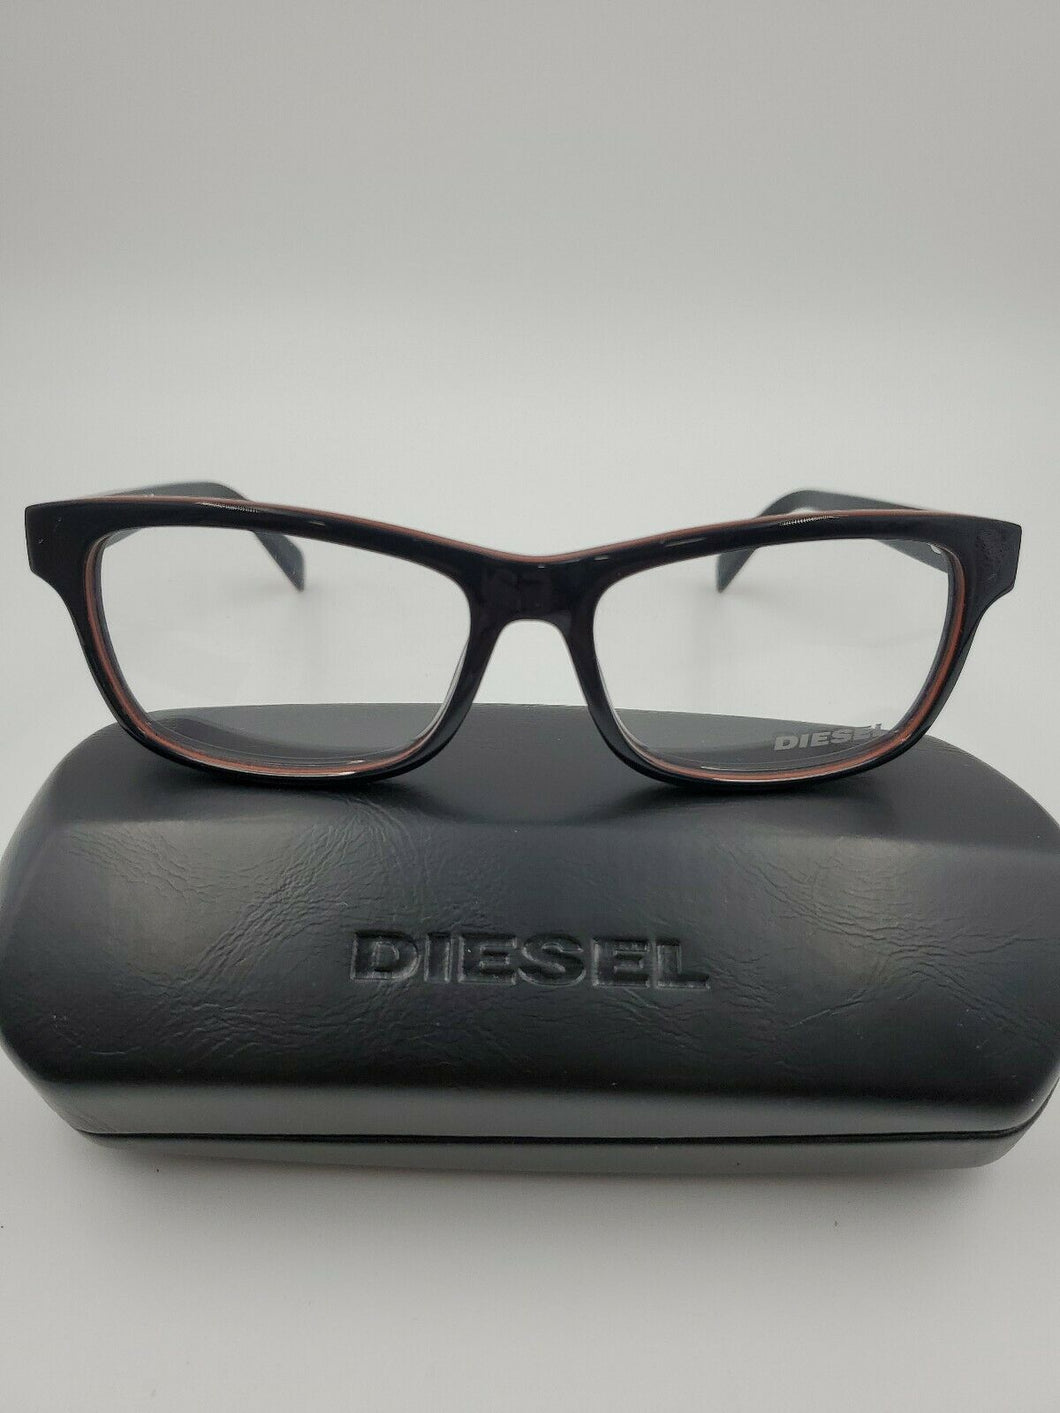 New Diesel Eyeglasses DL 5039 092  Black DL5039 54mm RX FRAMES UNISEX